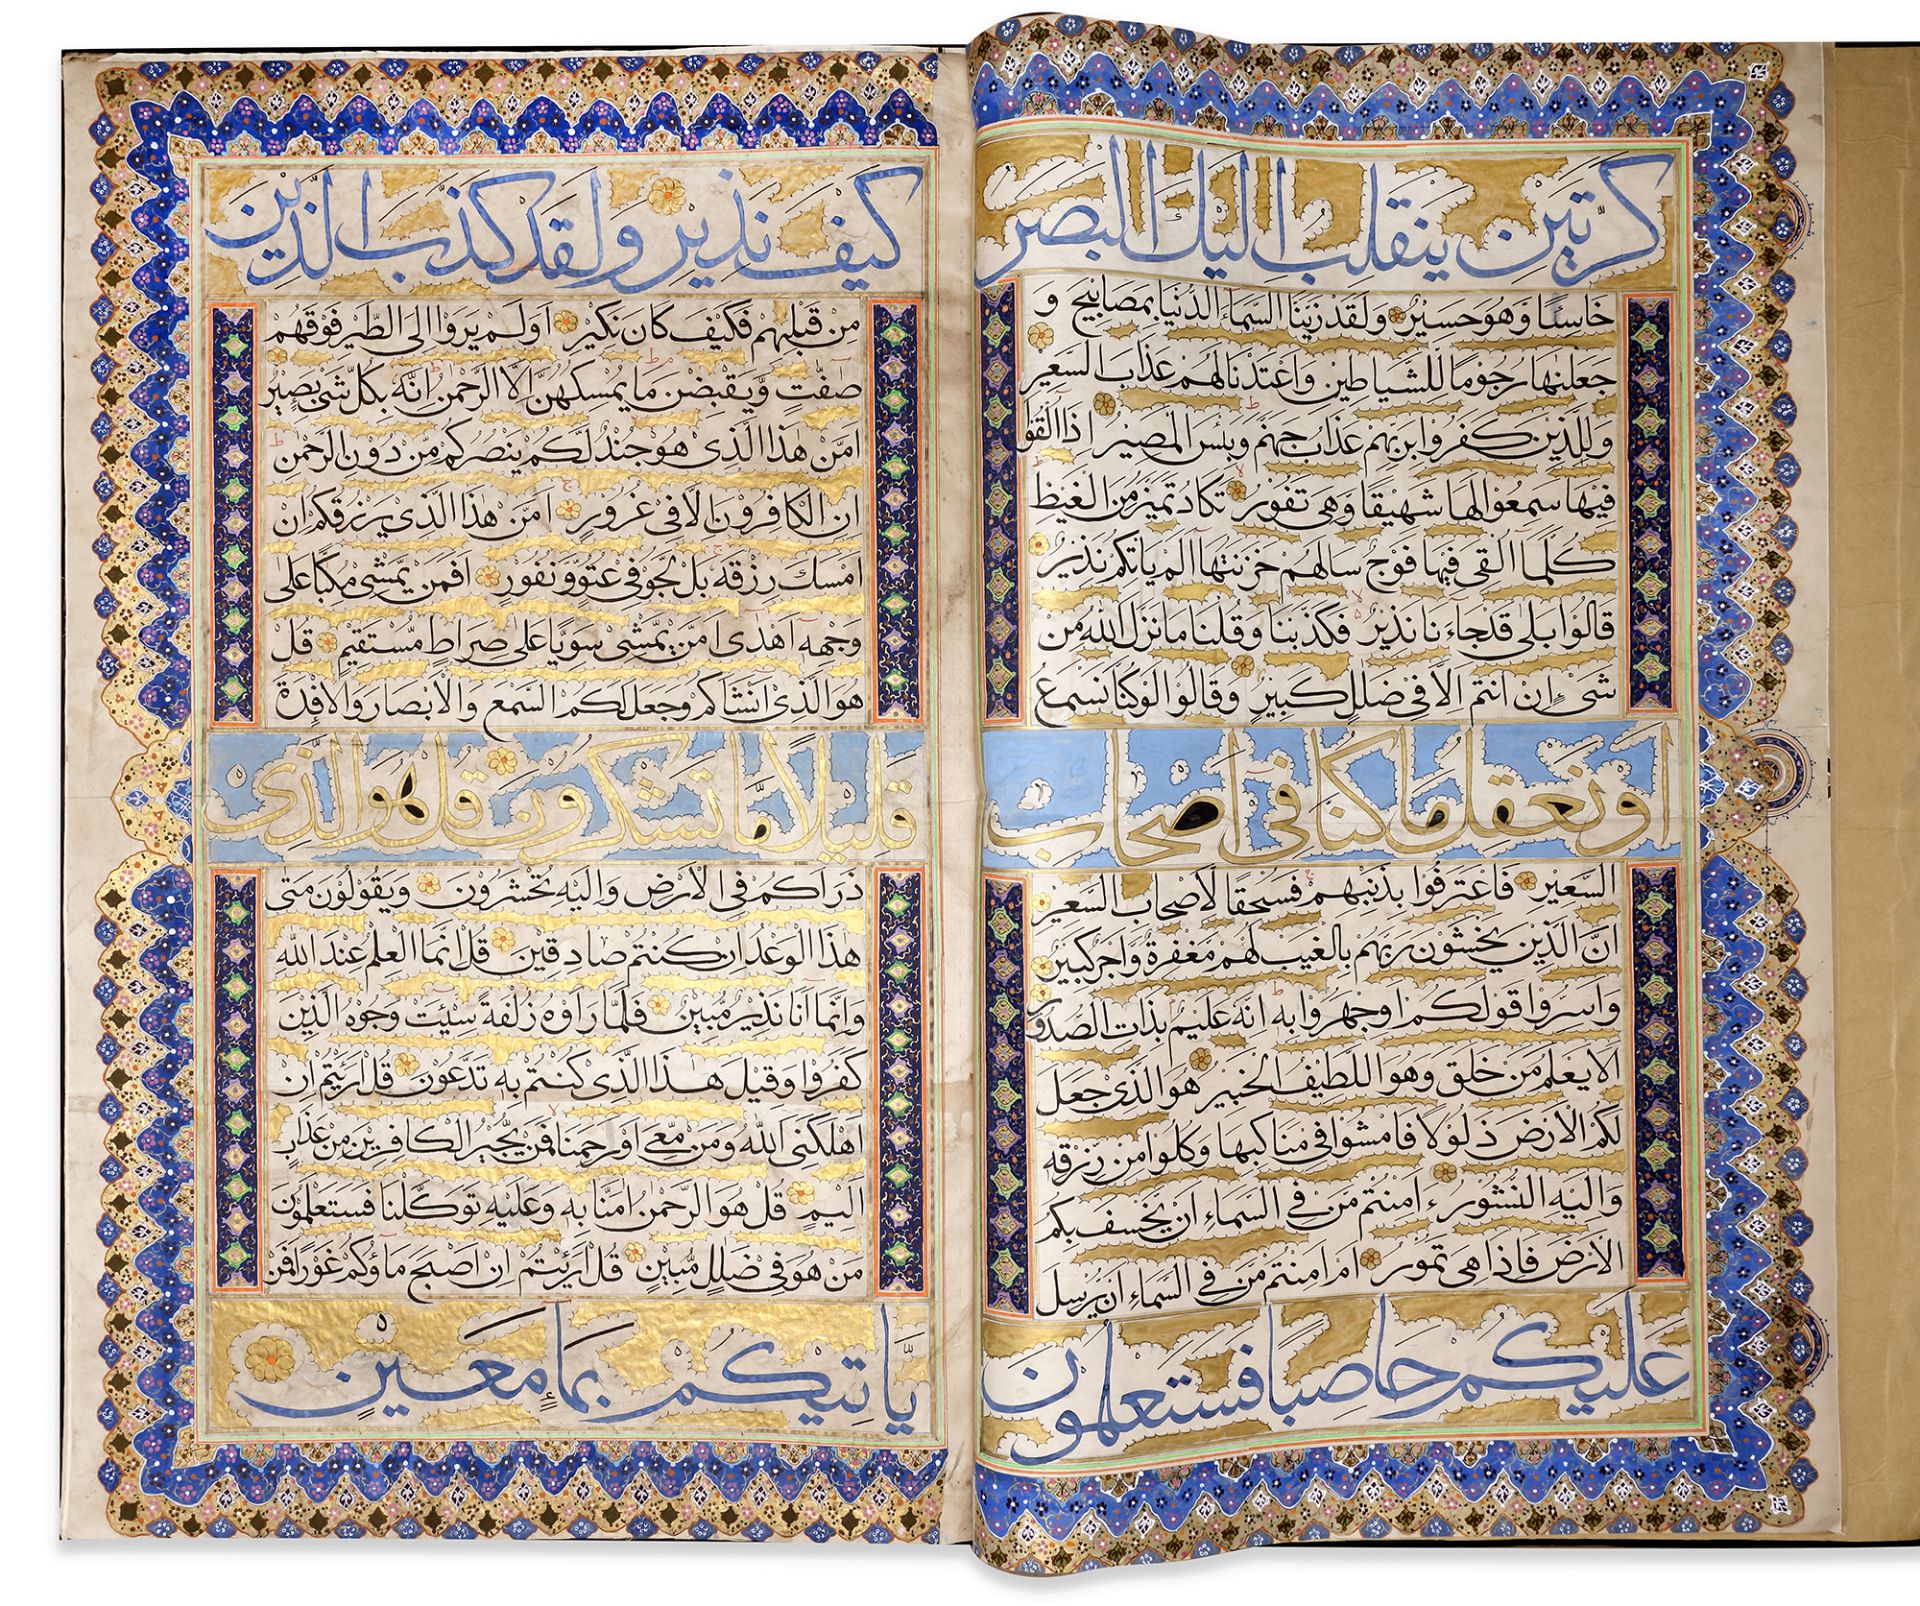 A LARGE KASHMIRI QURAN AMMA JUZ 30TH BY MUHAMMAD FADL AL-AFGHANI, 20TH CENTURY - Image 5 of 6